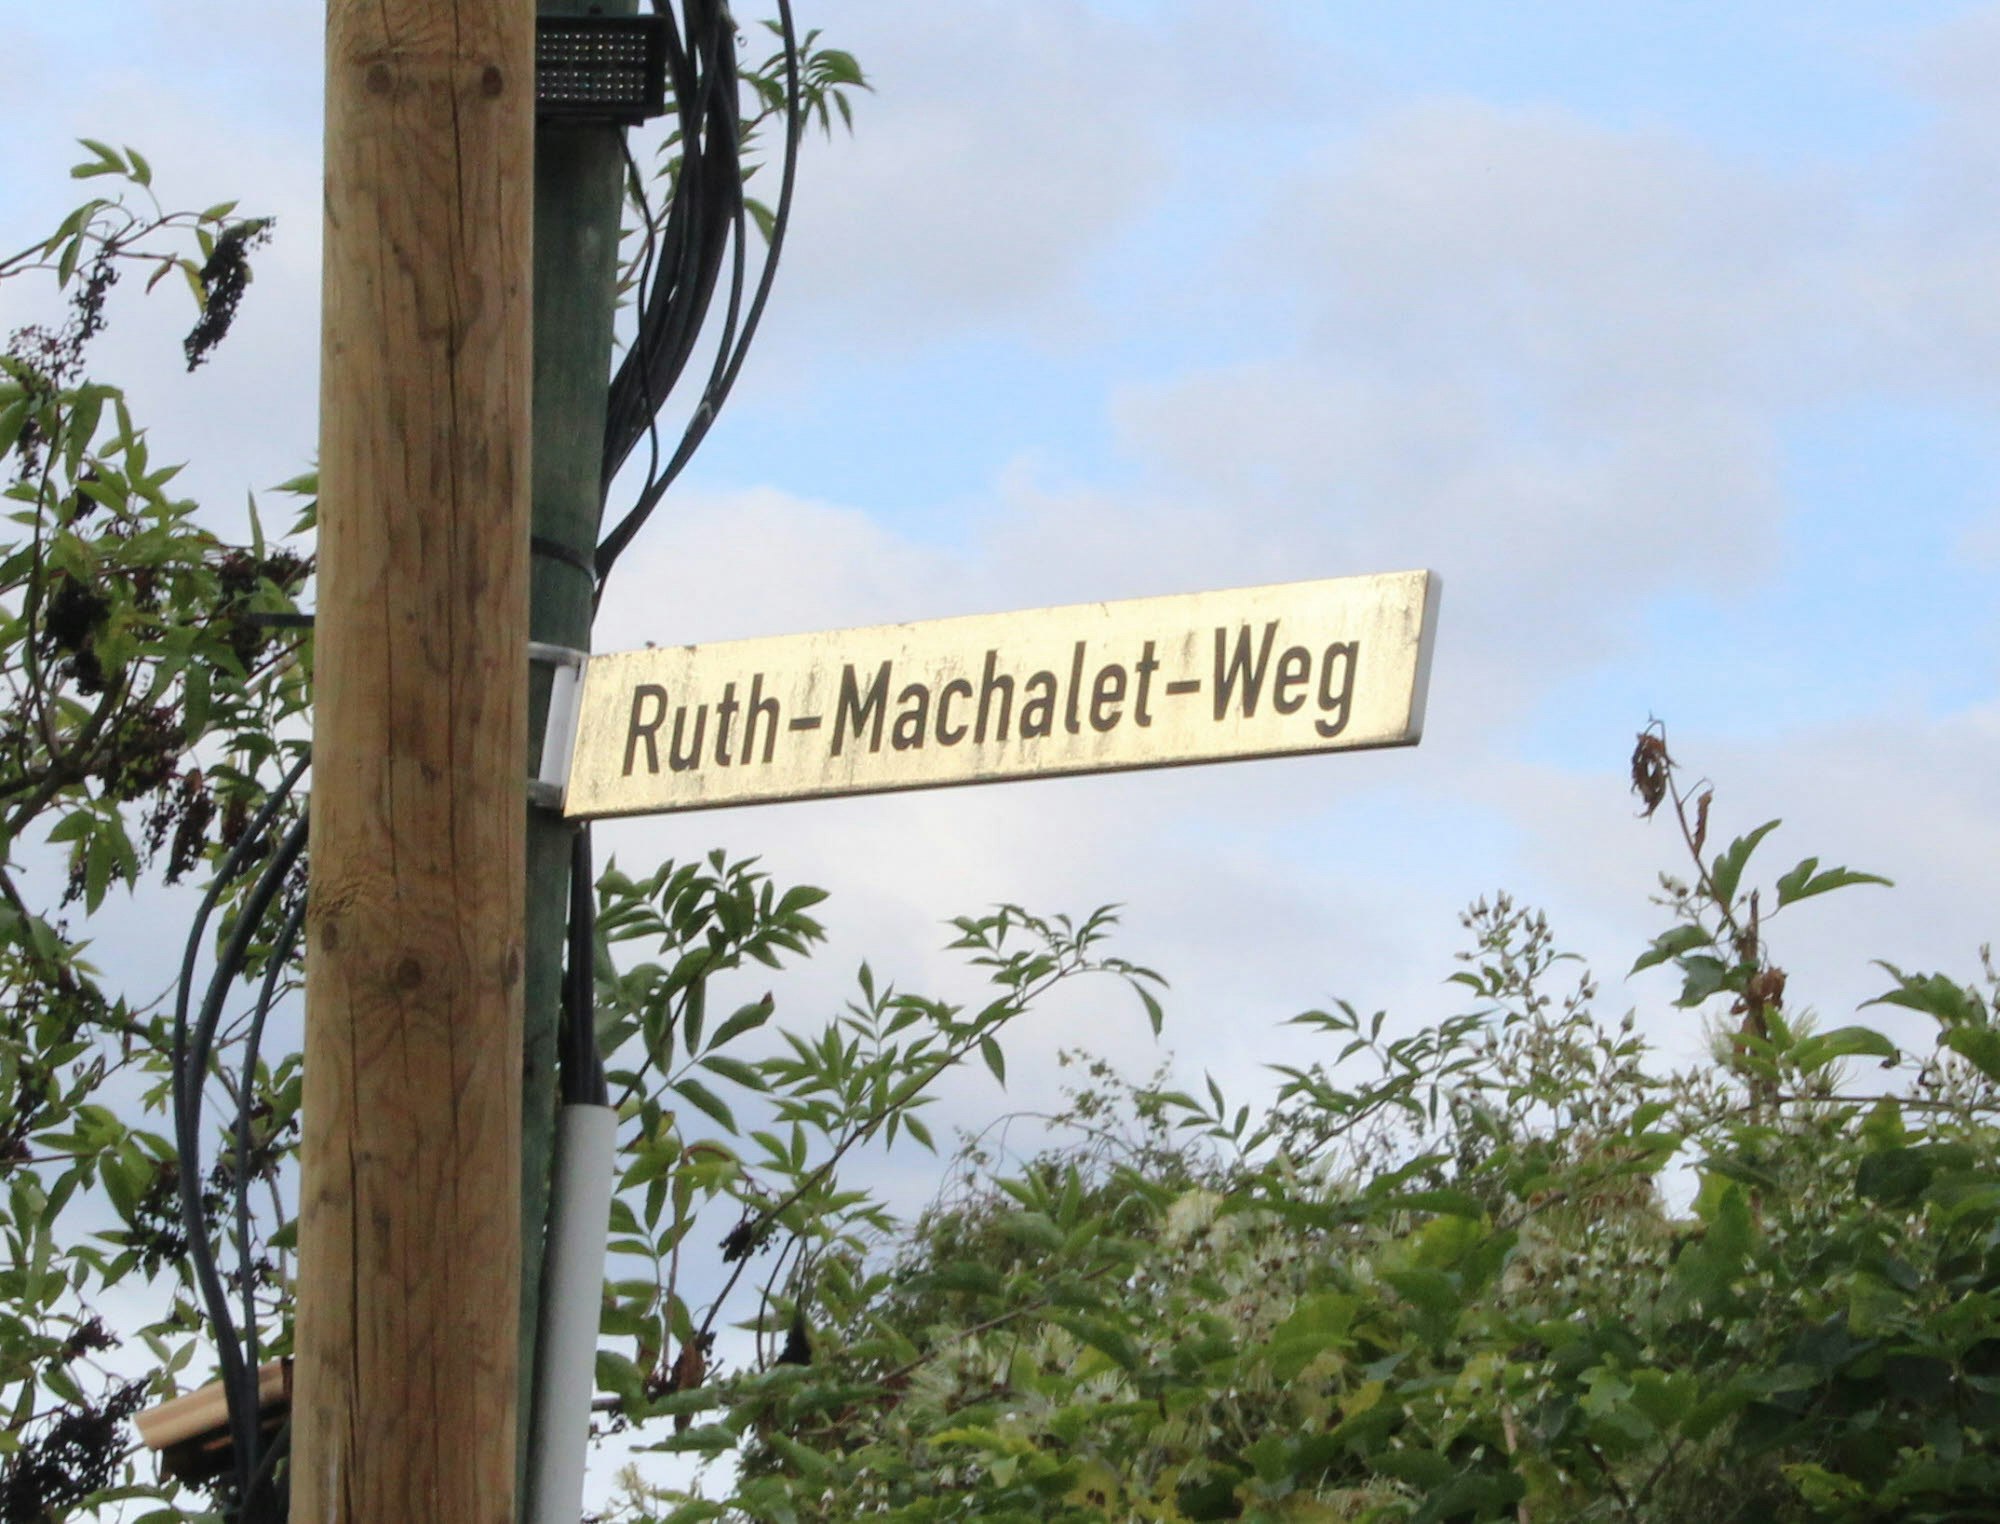 Beim Jubiläumsfest erlebten die Gäste einen schönen Nachmittag inmitten der Natur (Bild l.). An Ruth Machalet, die Gründerin der Anlage, erinnert heute ein nach ihr benannter Weg (rechts unten).